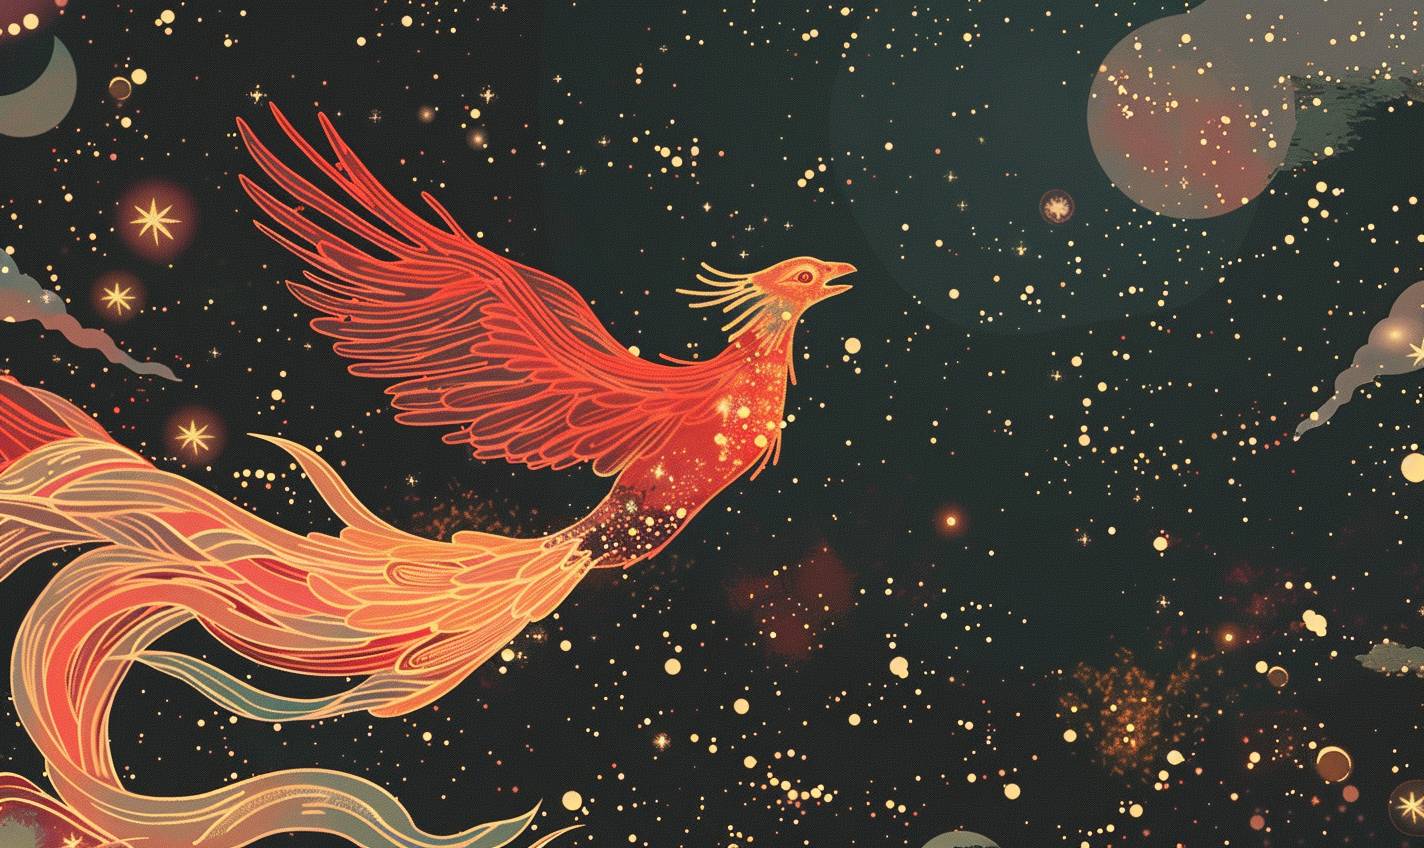 ハリエット・リー＝メリオンのスタイルで、宇宙を滑る宇宙の不死鳥